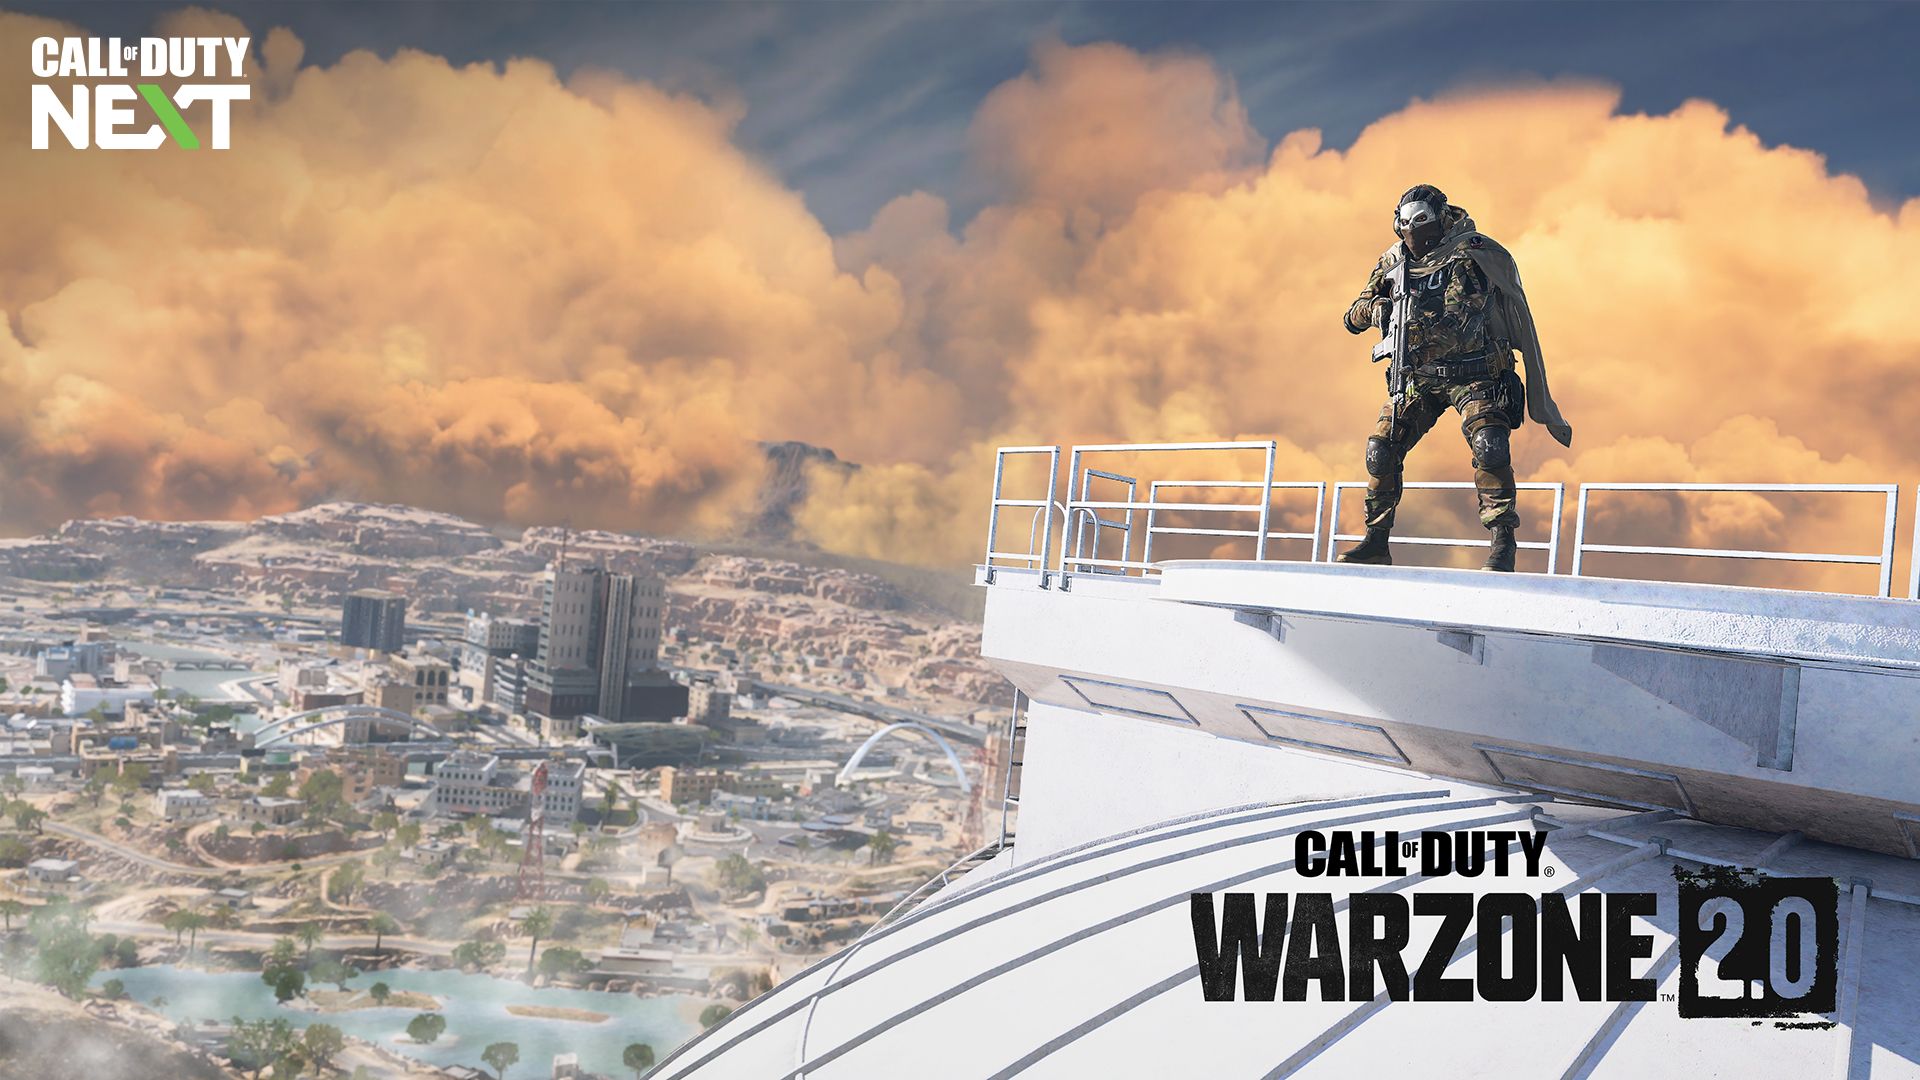 Ce nouveau skin est l'un des plus gros scandales de Call of Duty, on vous explique pourquoi il fait déjà rager les joueurs de Warzone